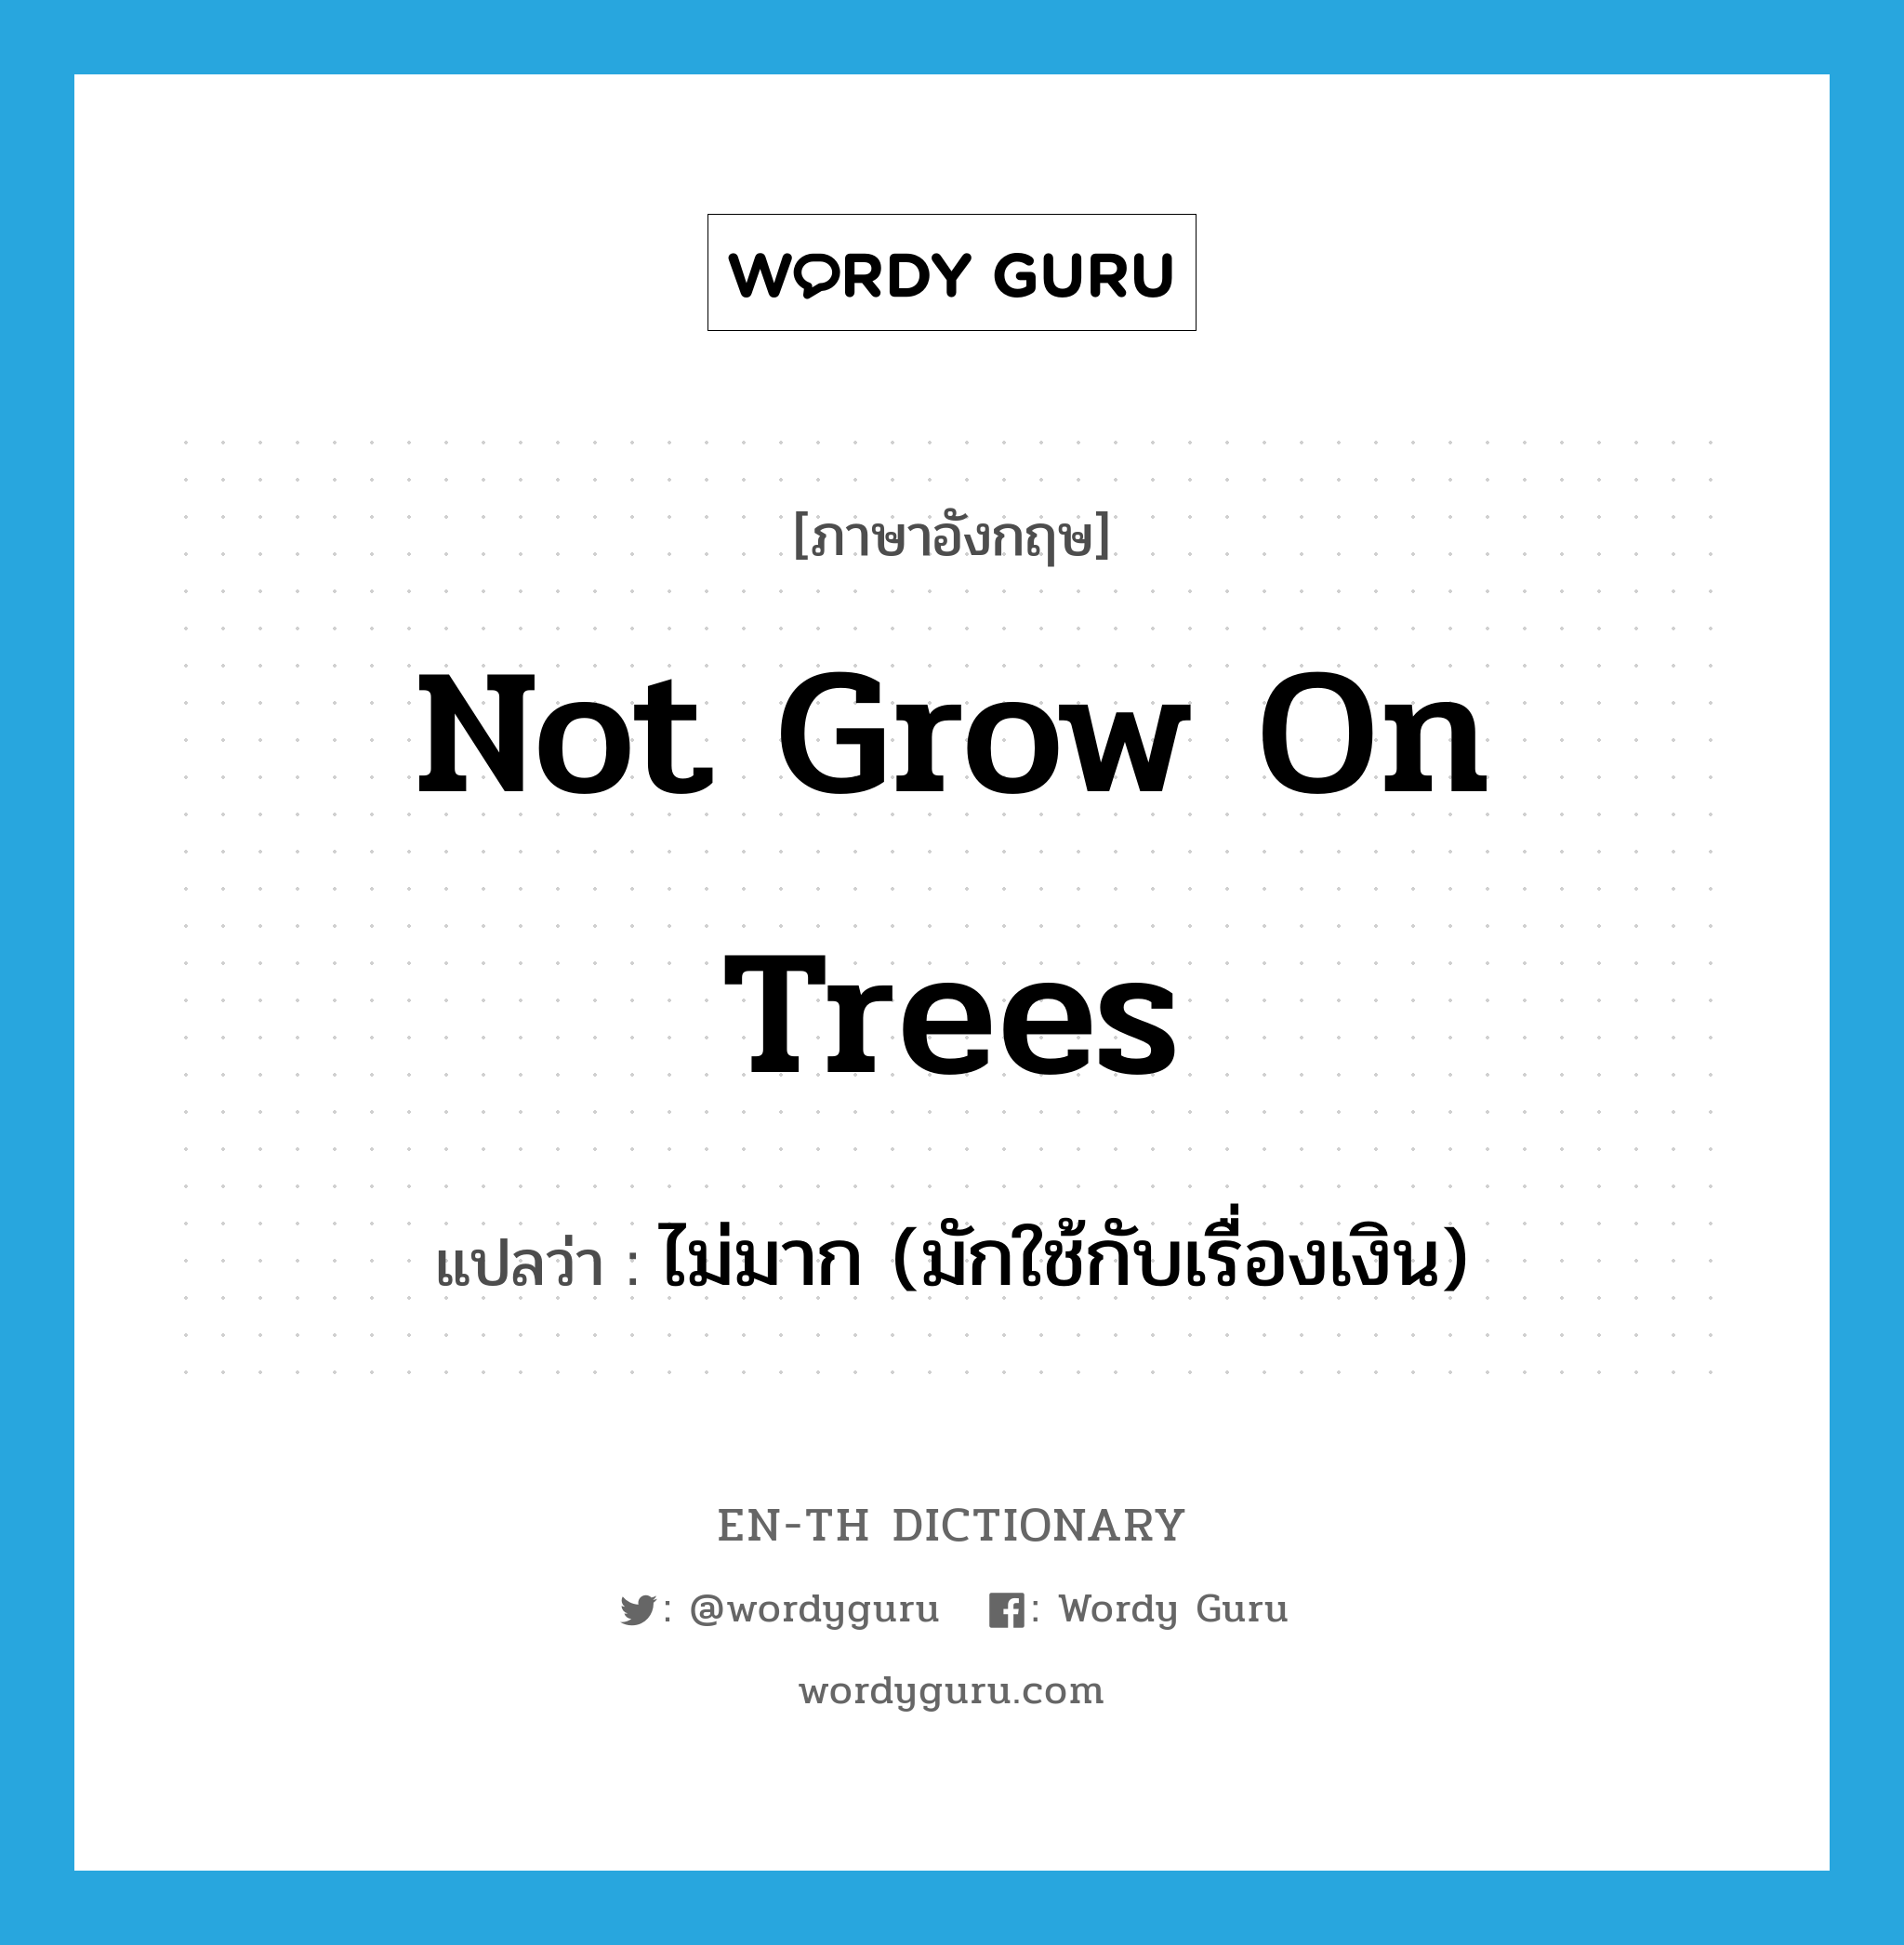 ไม่มาก (มักใช้กับเรื่องเงิน) ภาษาอังกฤษ?, คำศัพท์ภาษาอังกฤษ ไม่มาก (มักใช้กับเรื่องเงิน) แปลว่า not grow on trees ประเภท SL หมวด SL